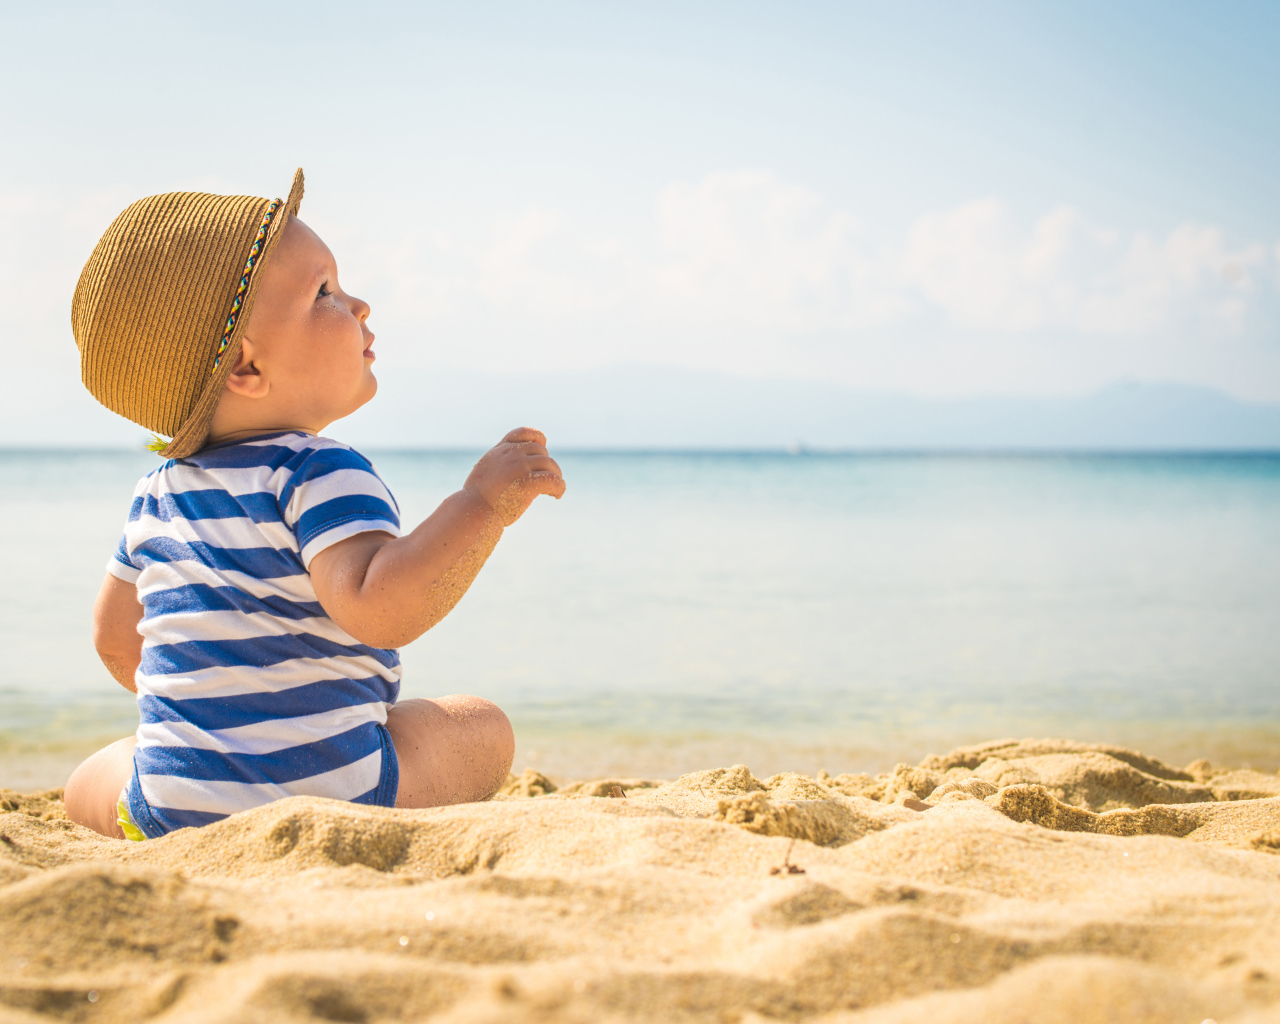 Маленький ребенок сидит на песке на пляже у моря